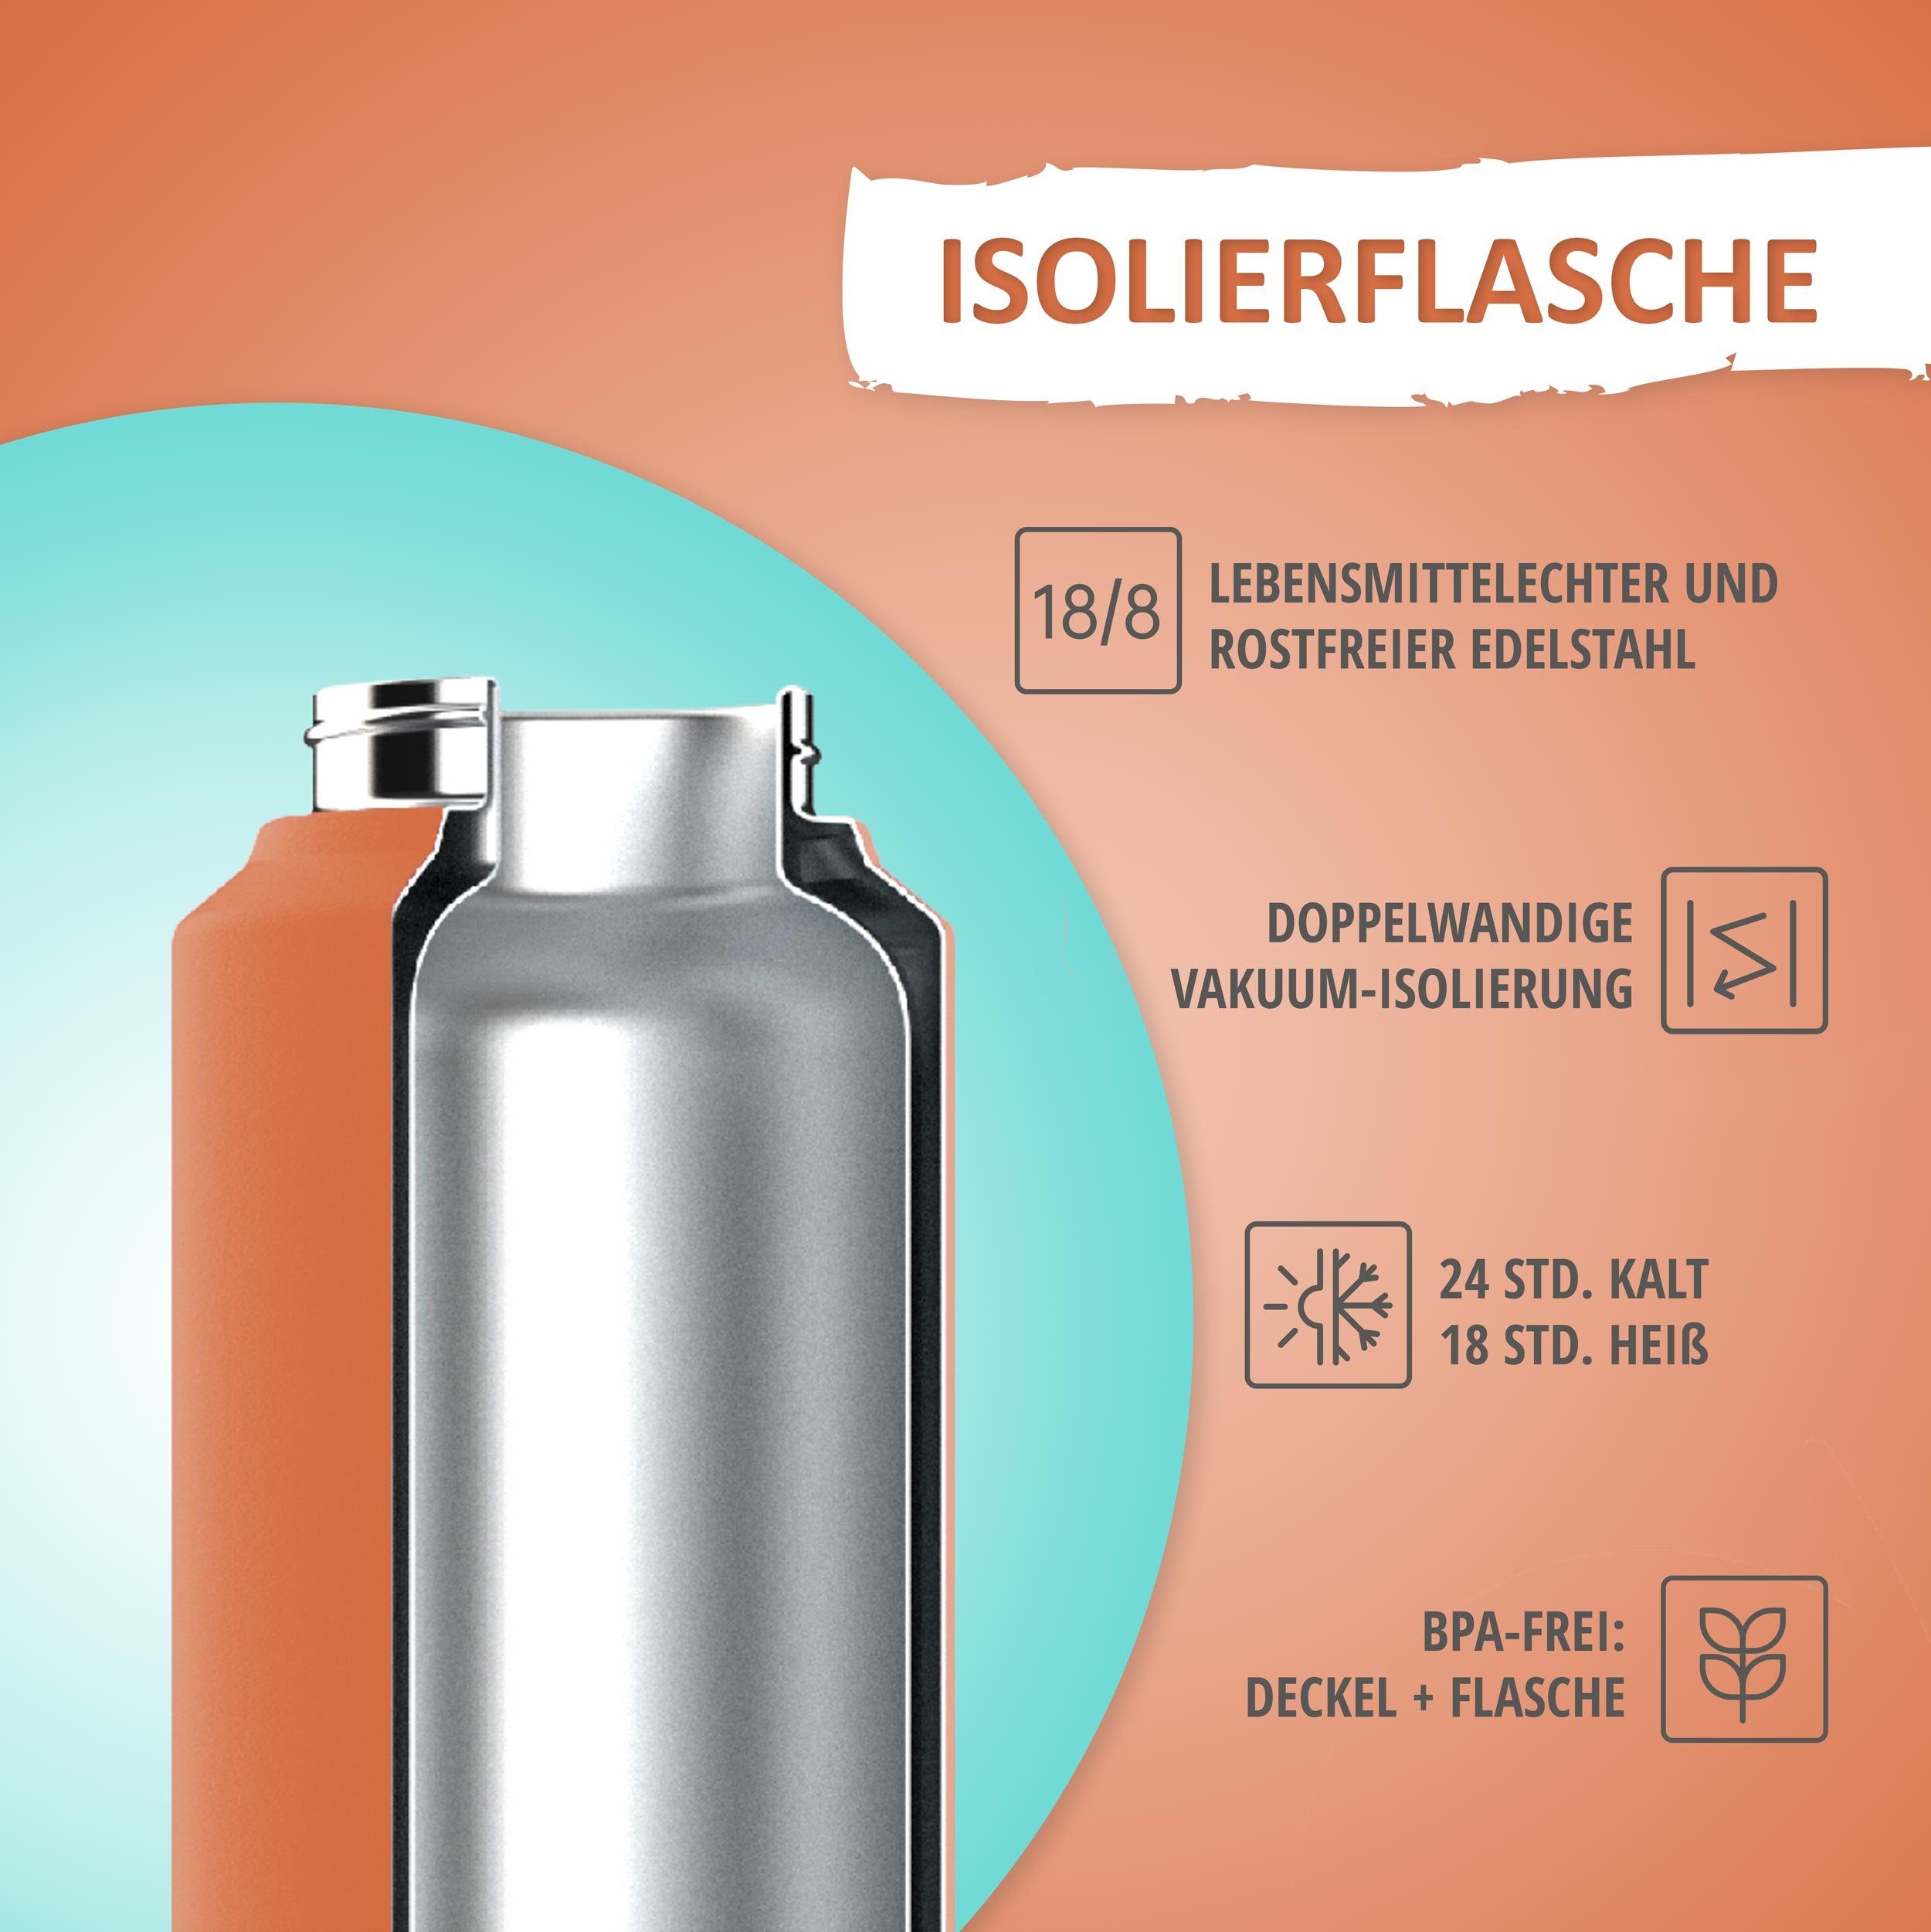 Isolierflasche 350ml oder Edelstahl, Trinkflasche, 500ml auslaufsicher, kyds Inhalt BPA-frei, Red/Blue Inhalt